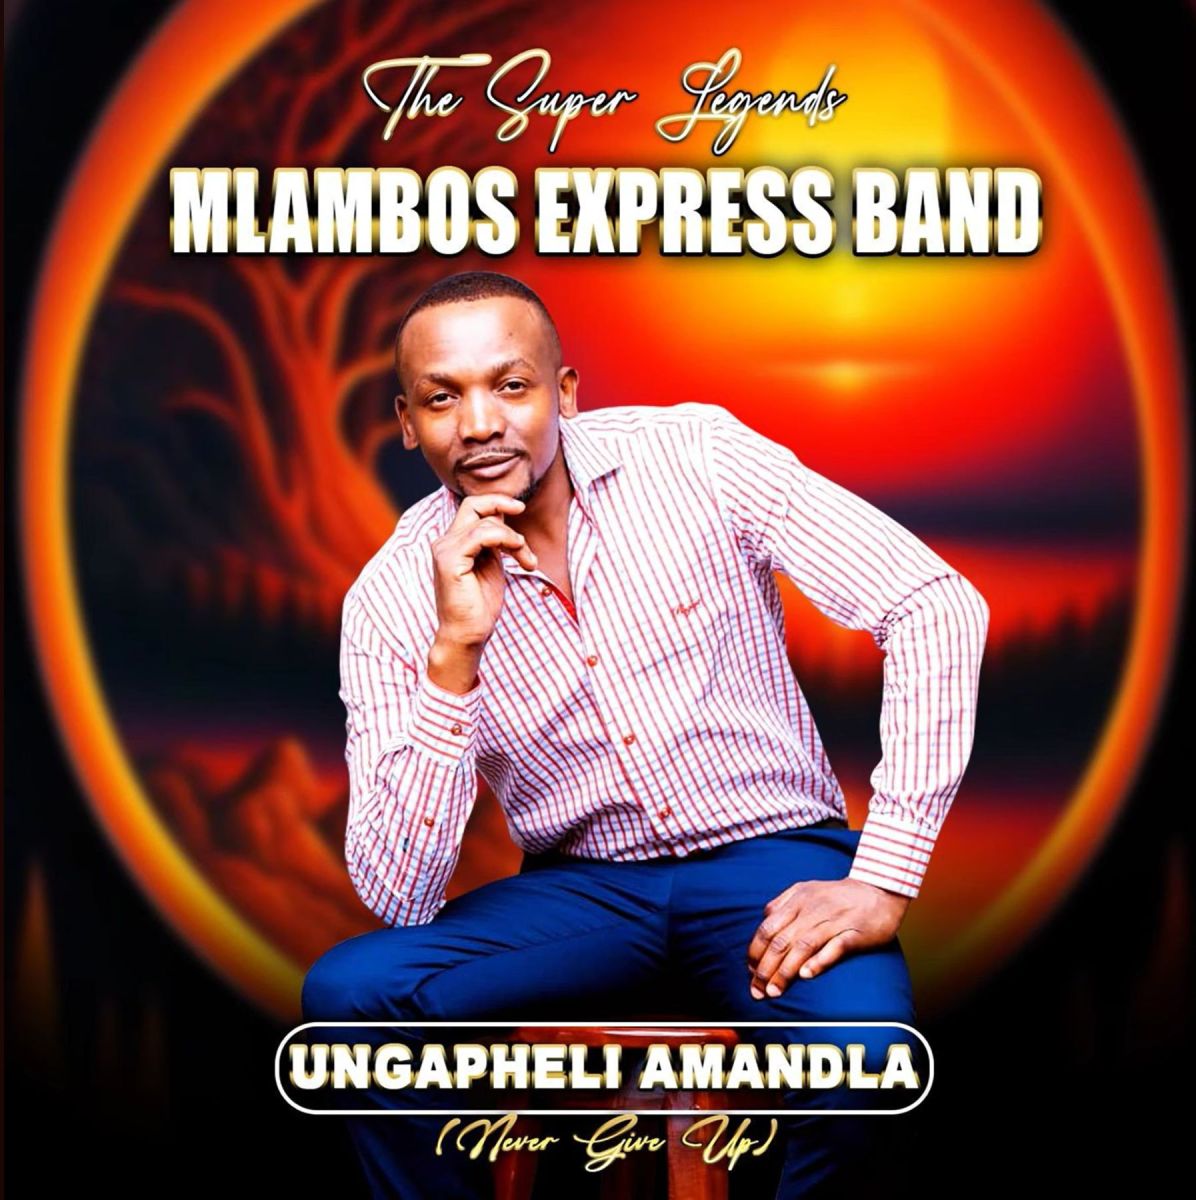 Mlambos Express Band - Ungapheli Amandla (Never Give Up) Album 10